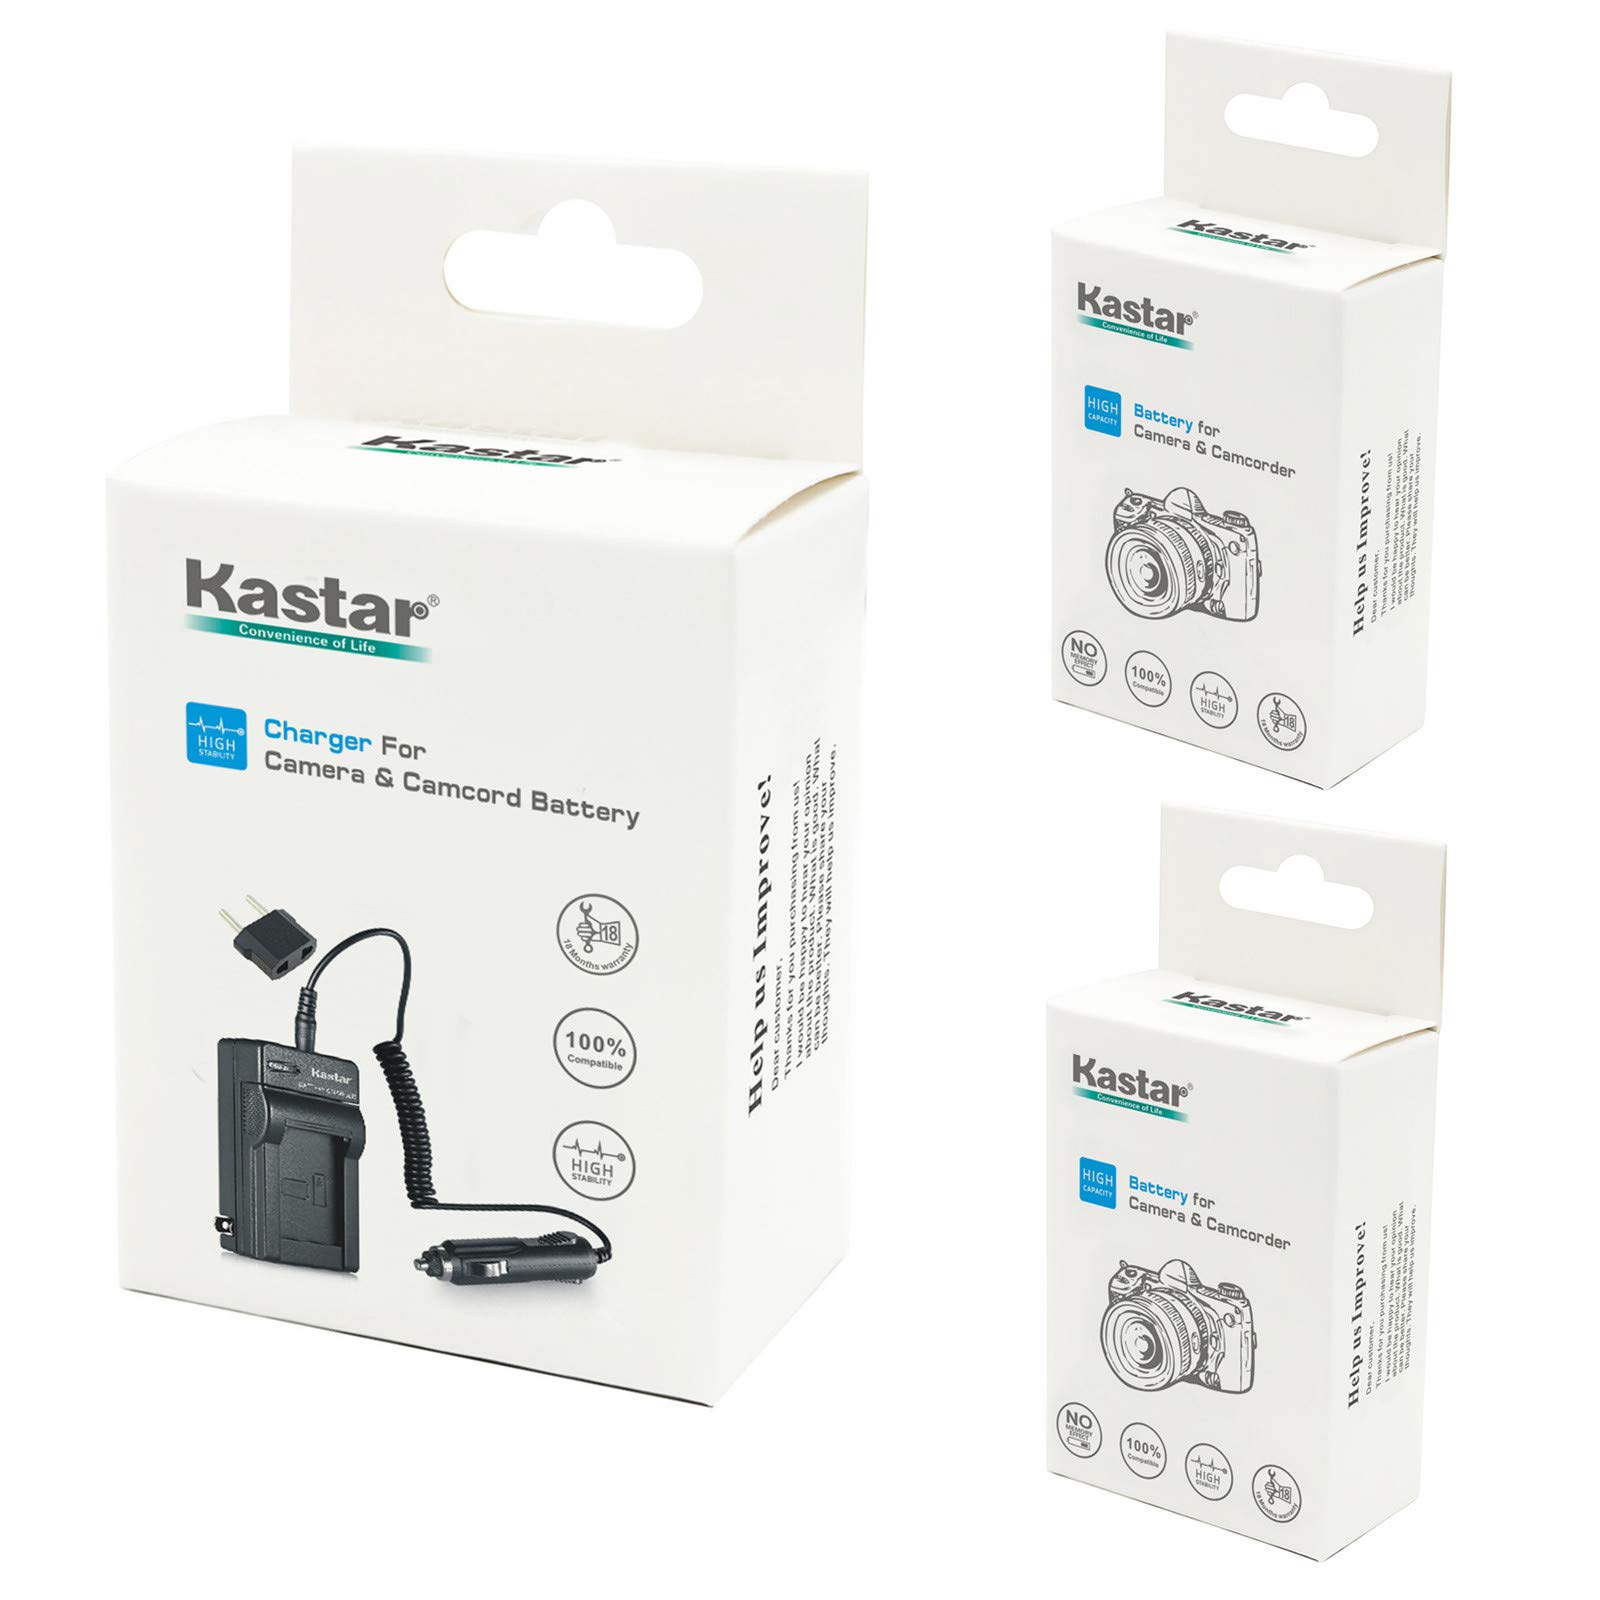 Mua Kastar 2 Pack Battery and Charger Replacement for Sony NP-FM30 NP-FM50  NP-FM55H Battery and Sony DSC-F707 DSC-F717 DSC-F828 DSC-R1 DSC-S30 DSC-S50  DSC-S70 DSC-S75 DSC-S85; Sony DSR-PDX10 HVL-ML20M trên Amazon Mỹ chính